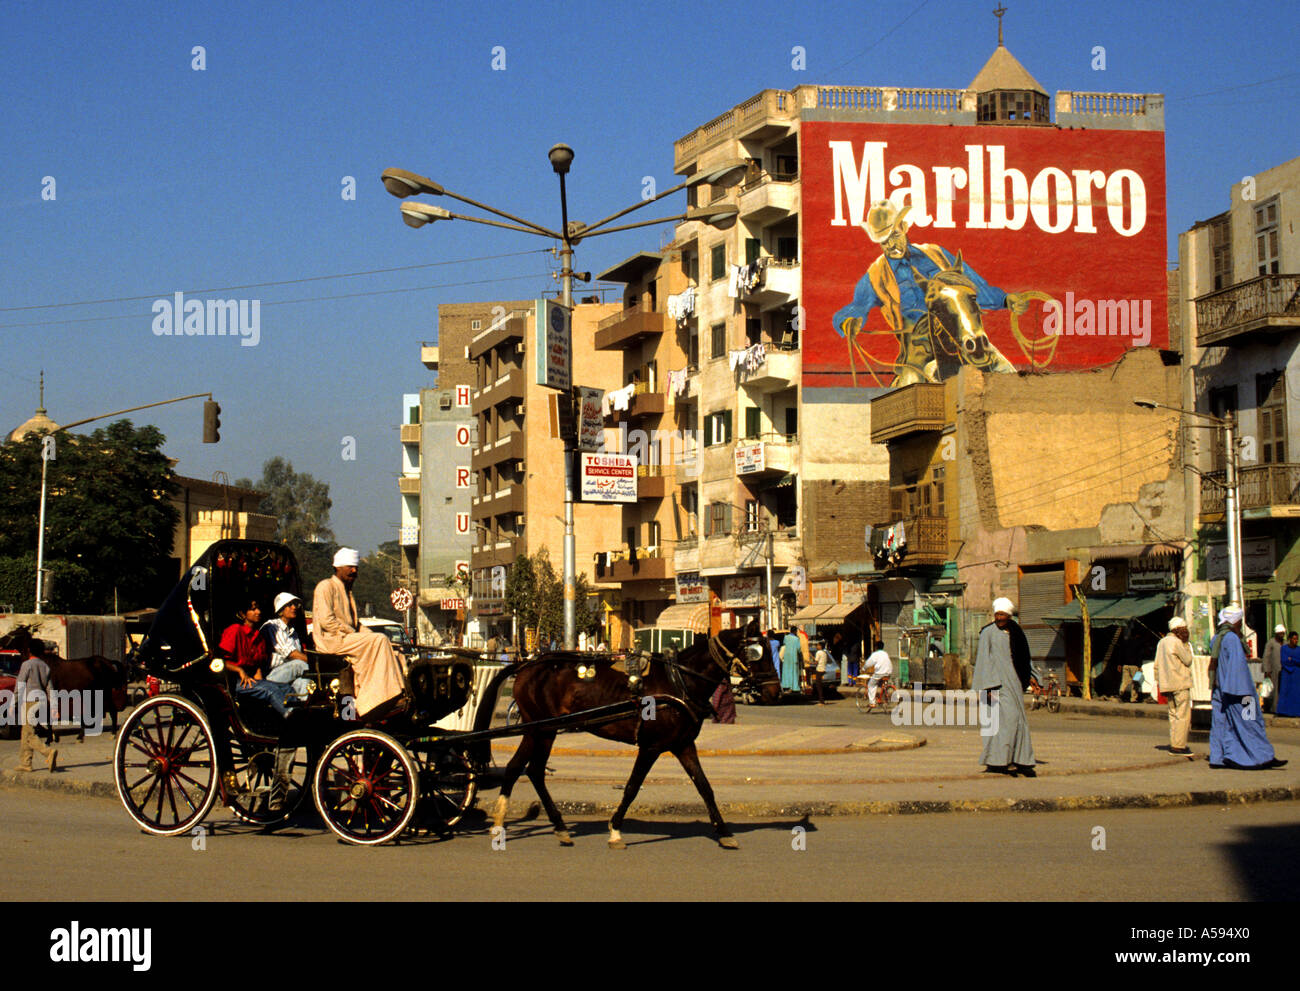 Horse cart Asyut Malboro Asyut Egypt Egyptian Market town city Nile Desert Stock Photo